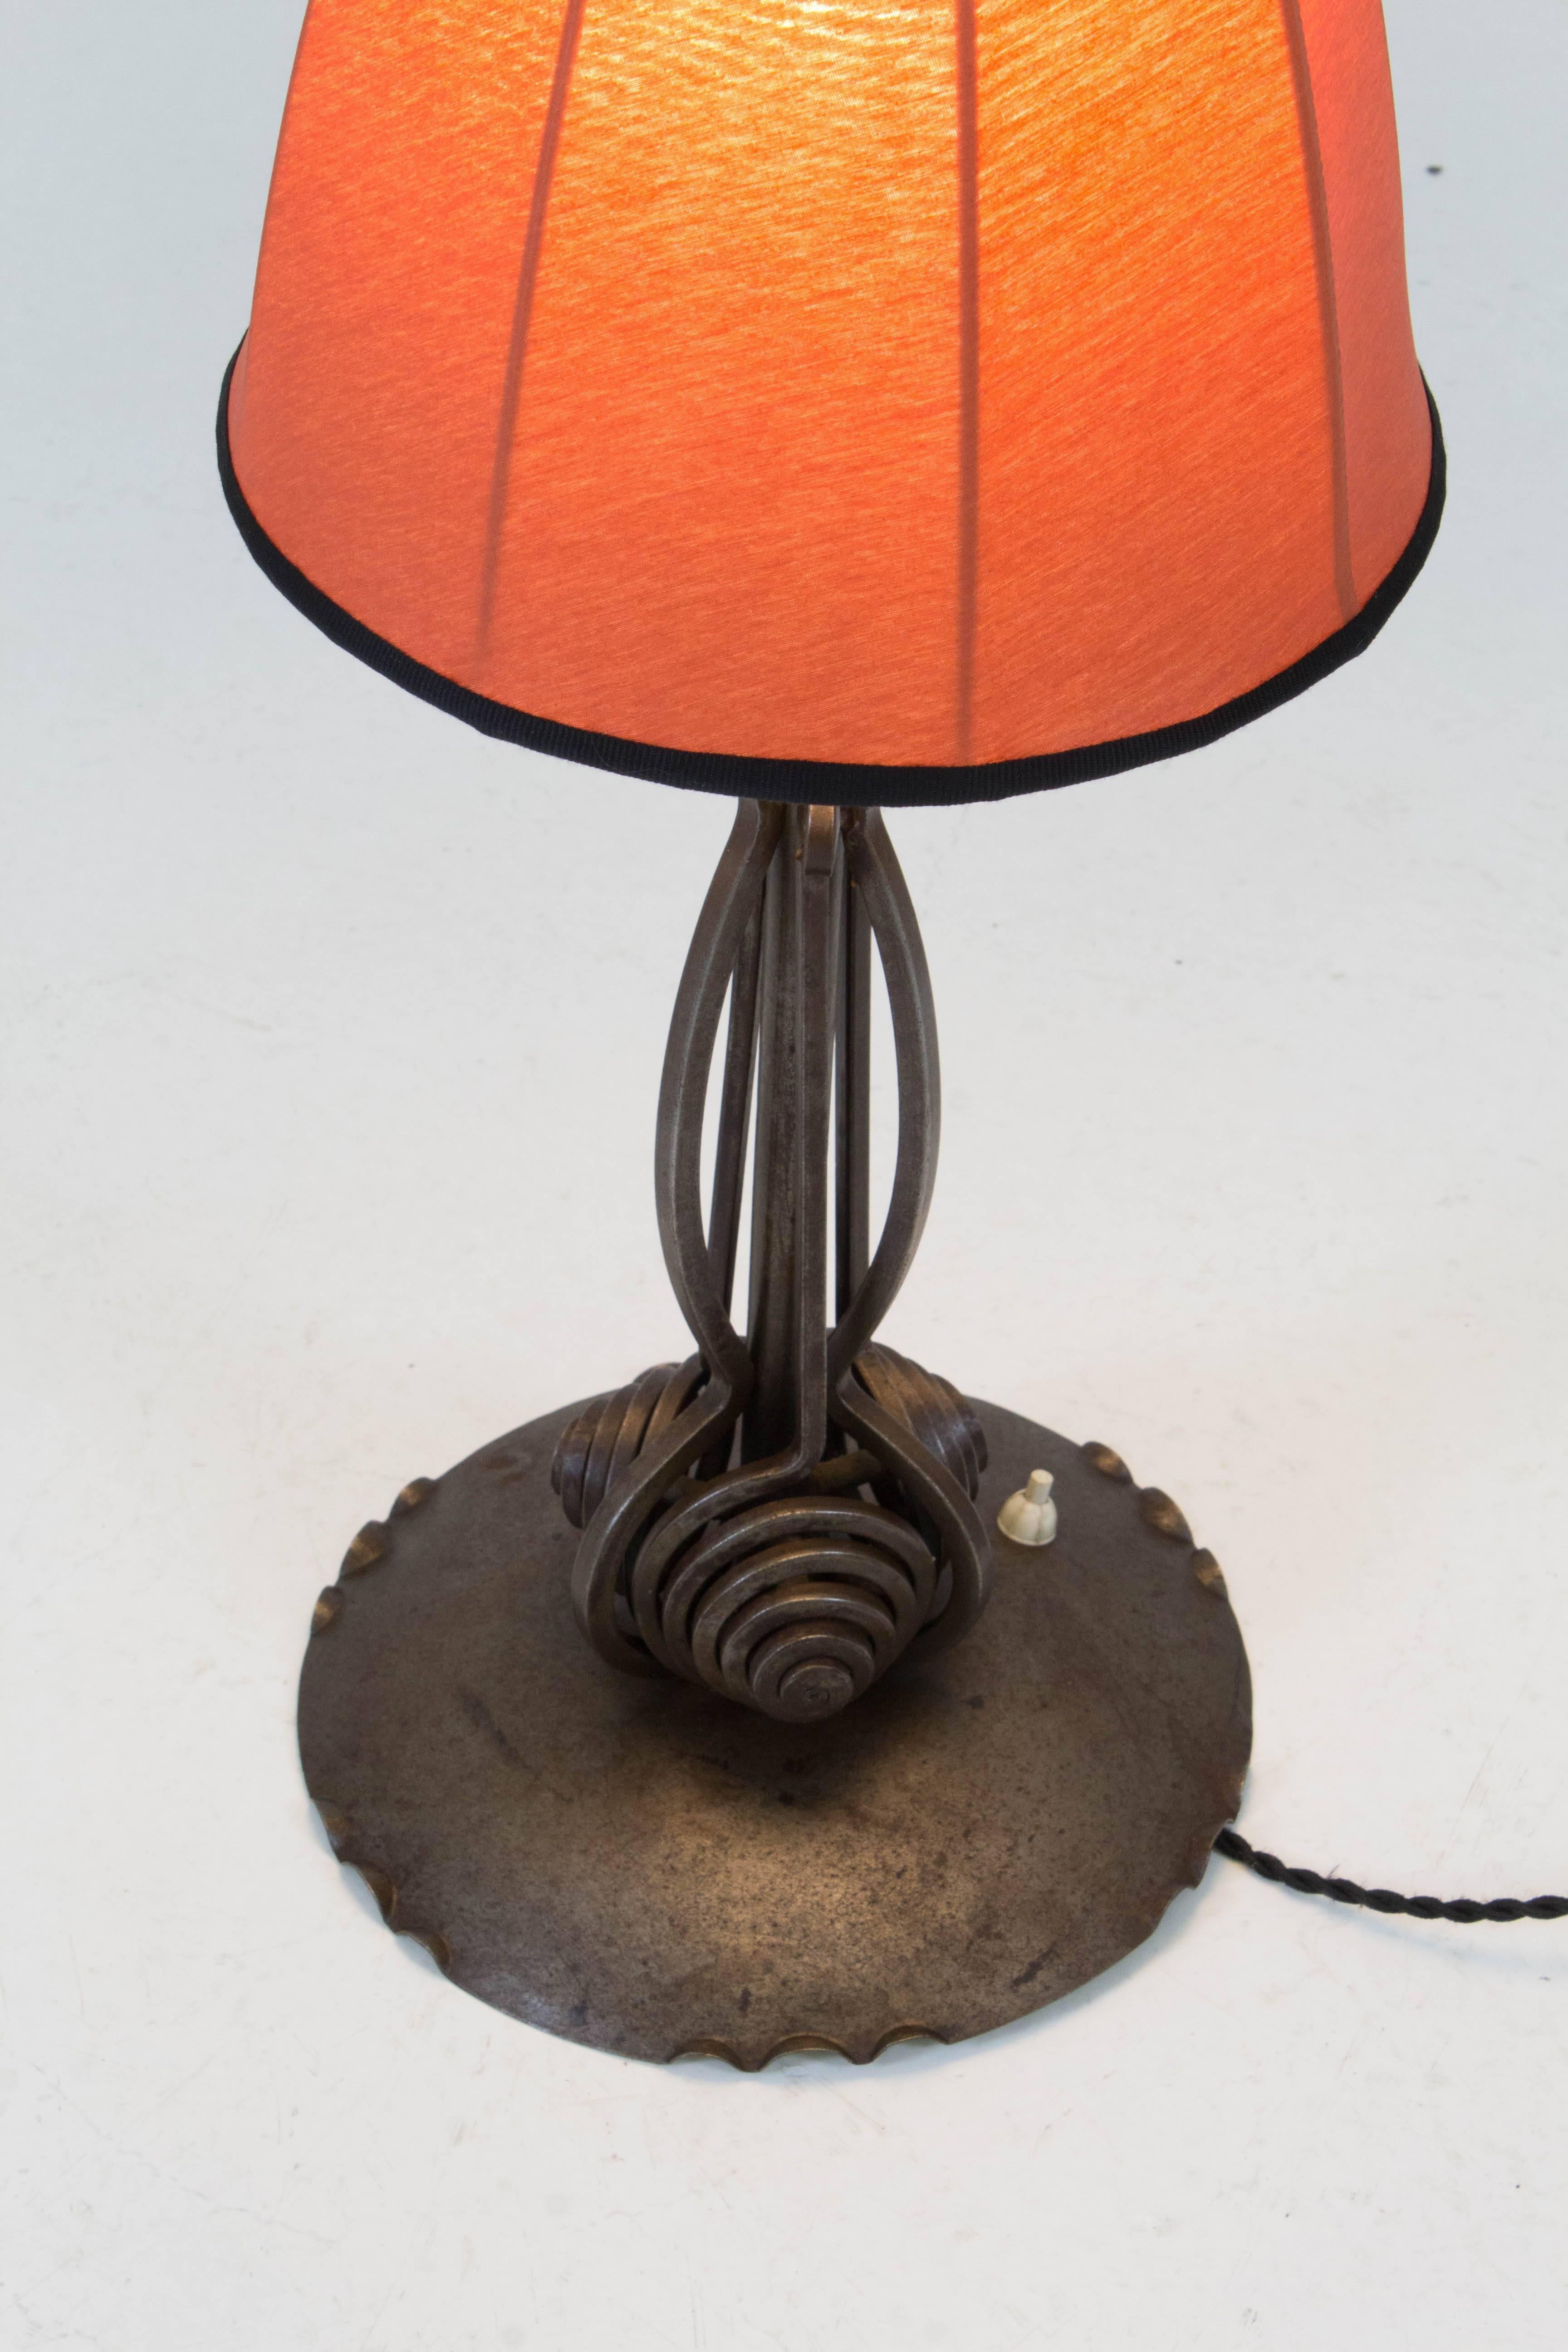 Silk Rare Art Deco Amsterdam School Table Lamp by Winkelman & Van der Bijl, 1920s